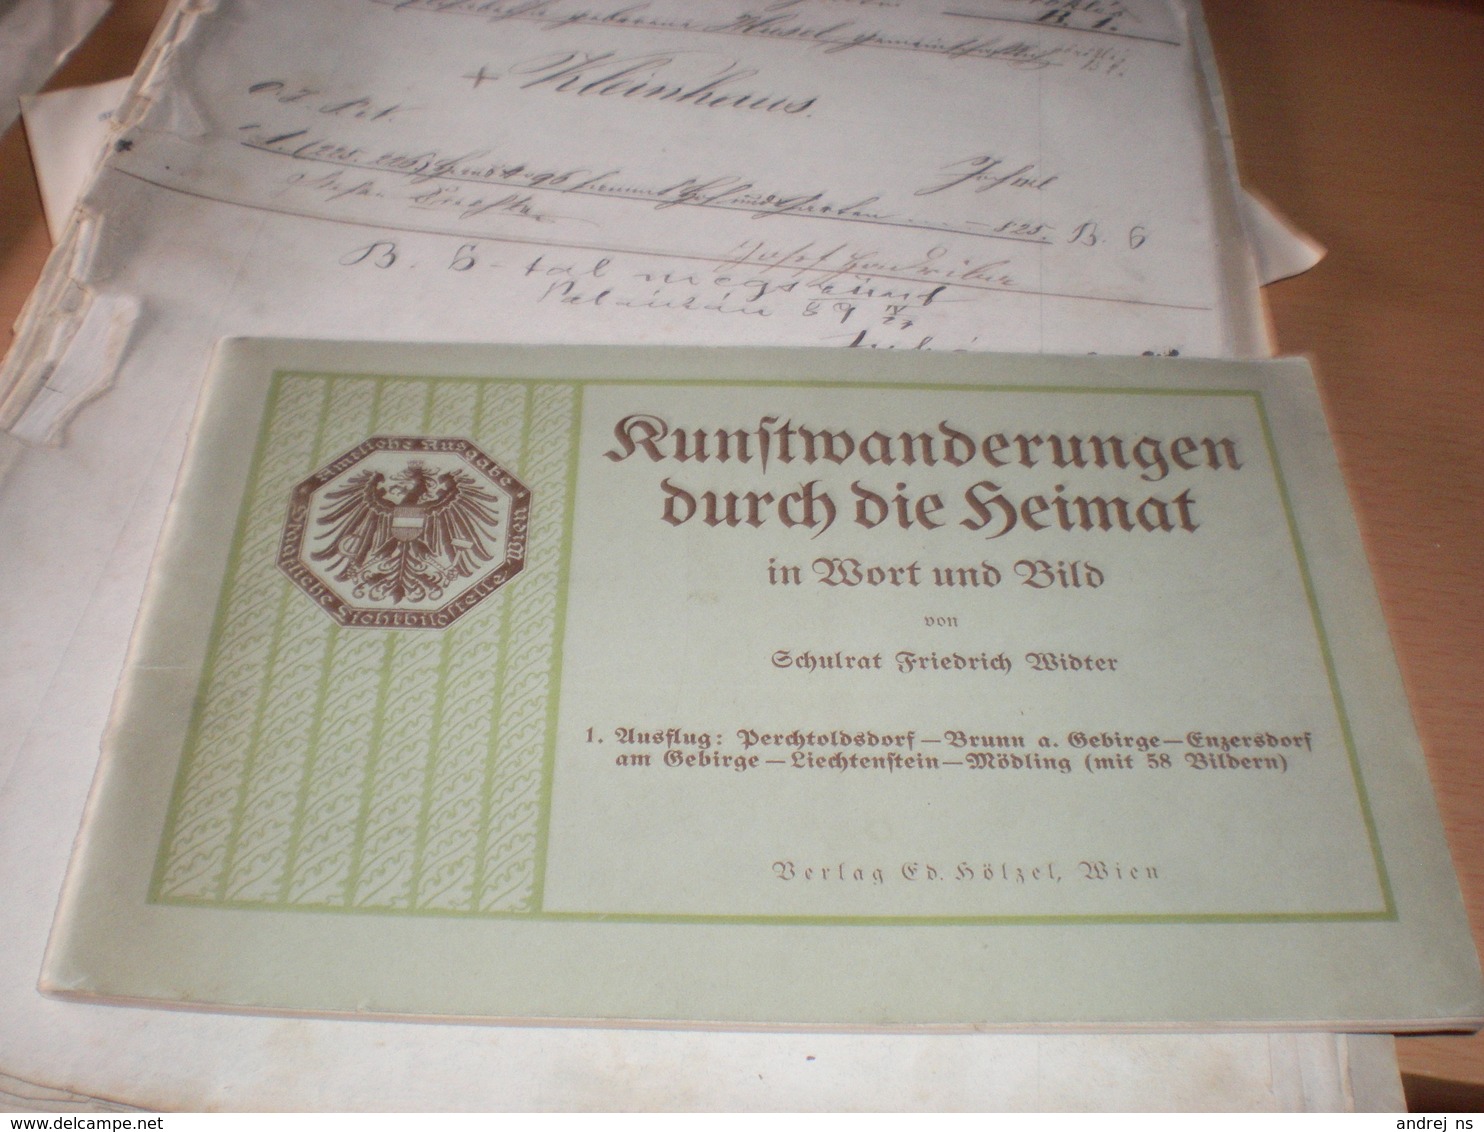 Wien Runftwanderungen Durch Die Seimat In Wort Und Bild  55 Pages - Alte Bücher